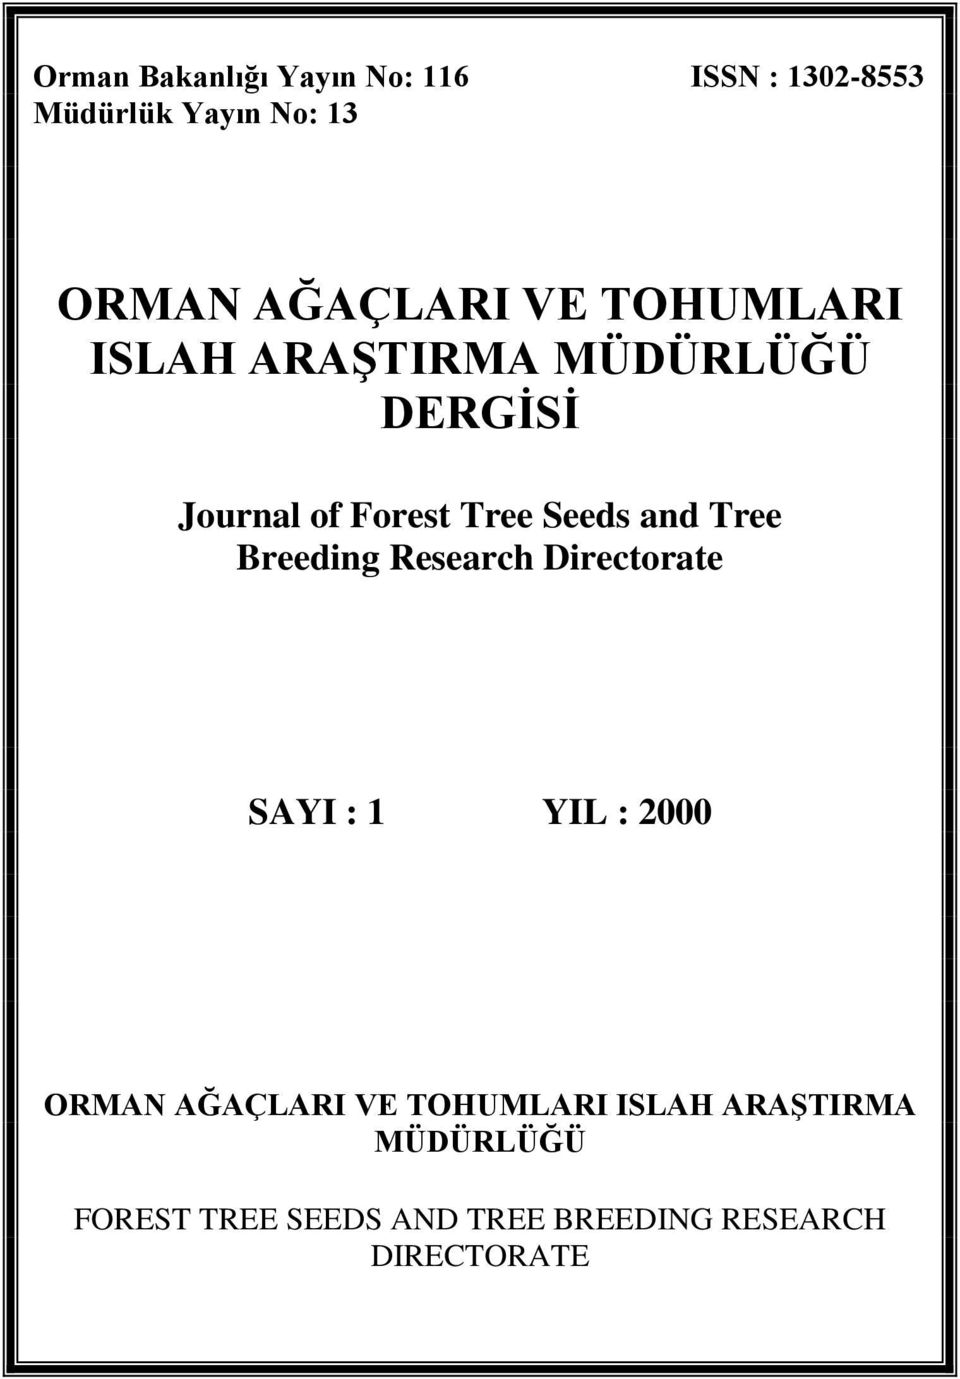 Seeds and Tree Breeding Research Directorate SAYI : 1 YIL : 2000 ORMAN AĞAÇLARI VE